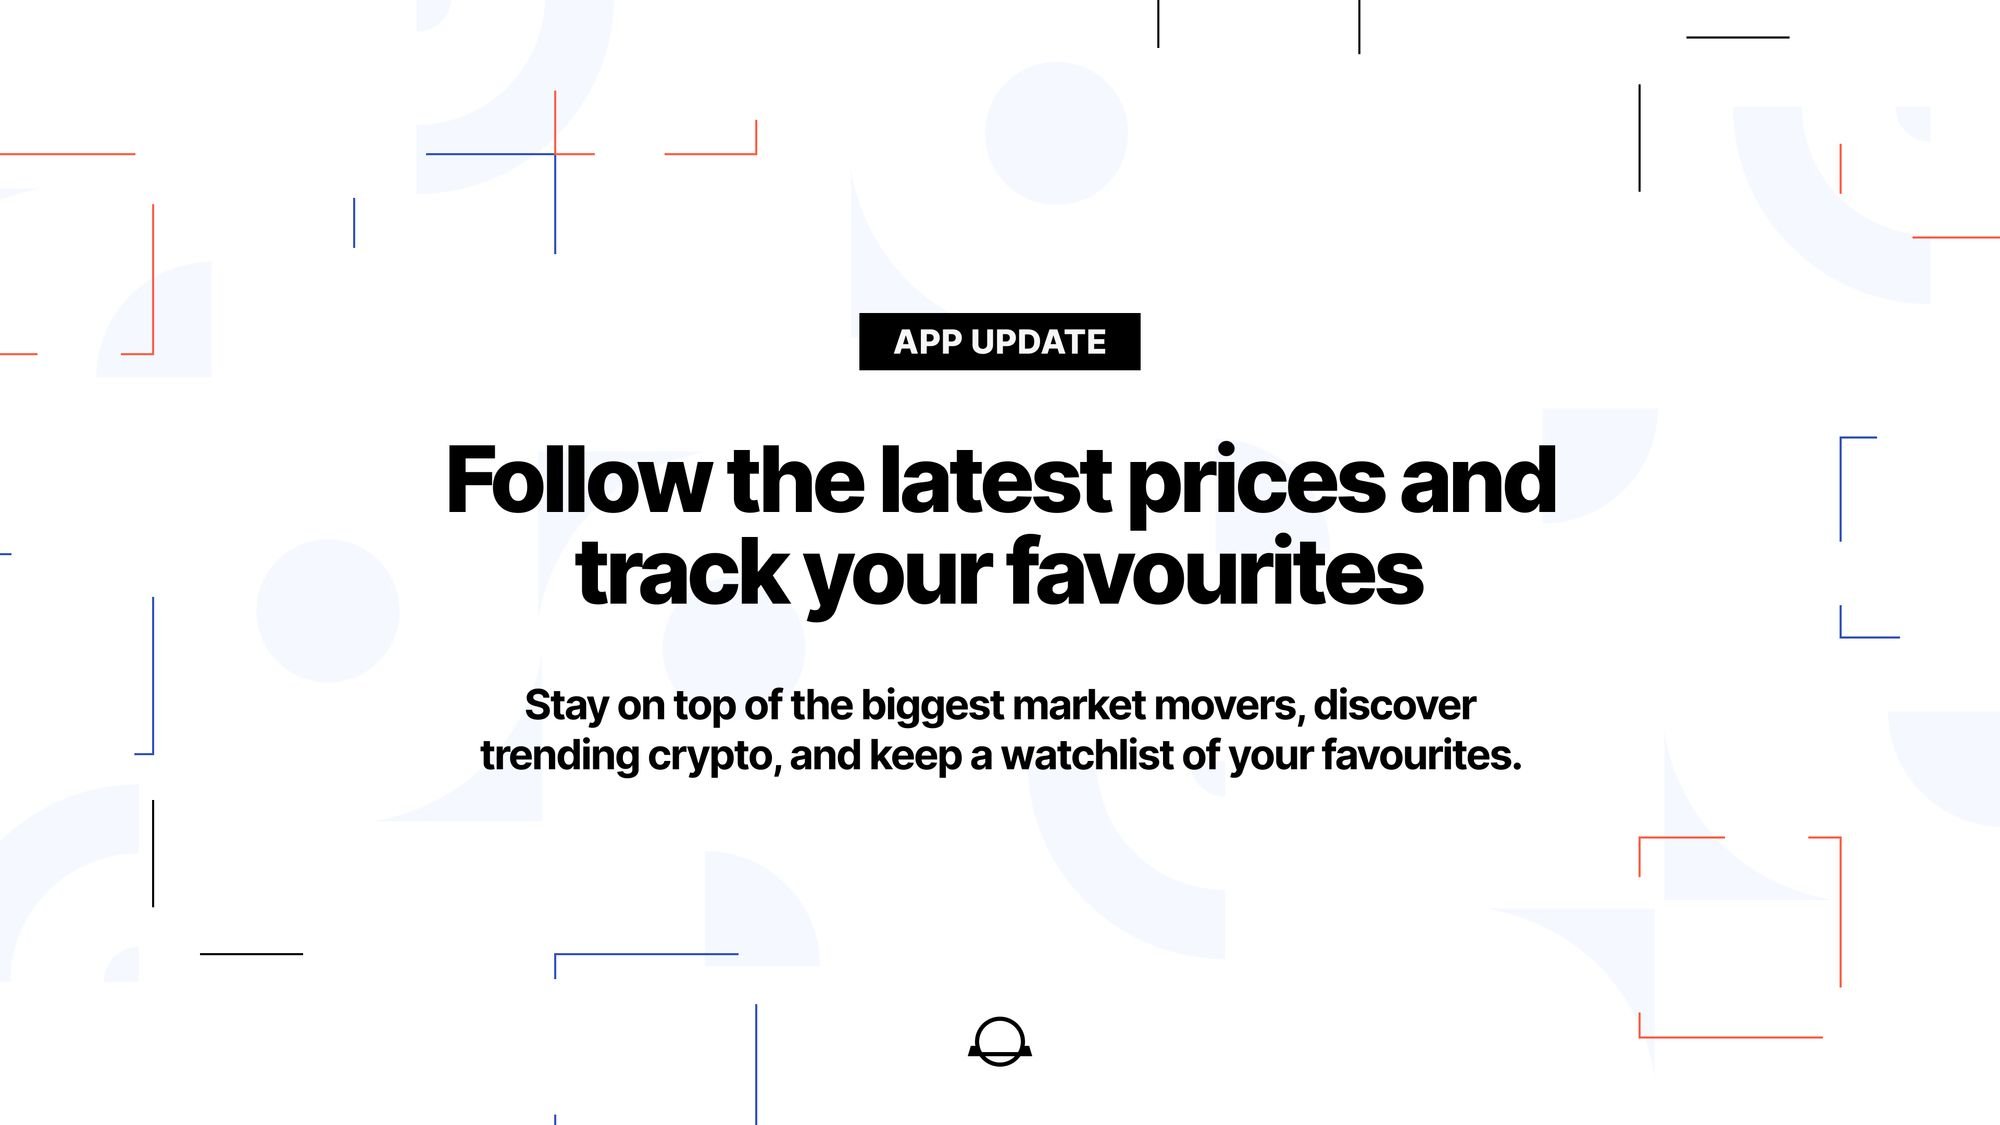 Segui i prezzi più recenti e monitora i tuoi preferiti